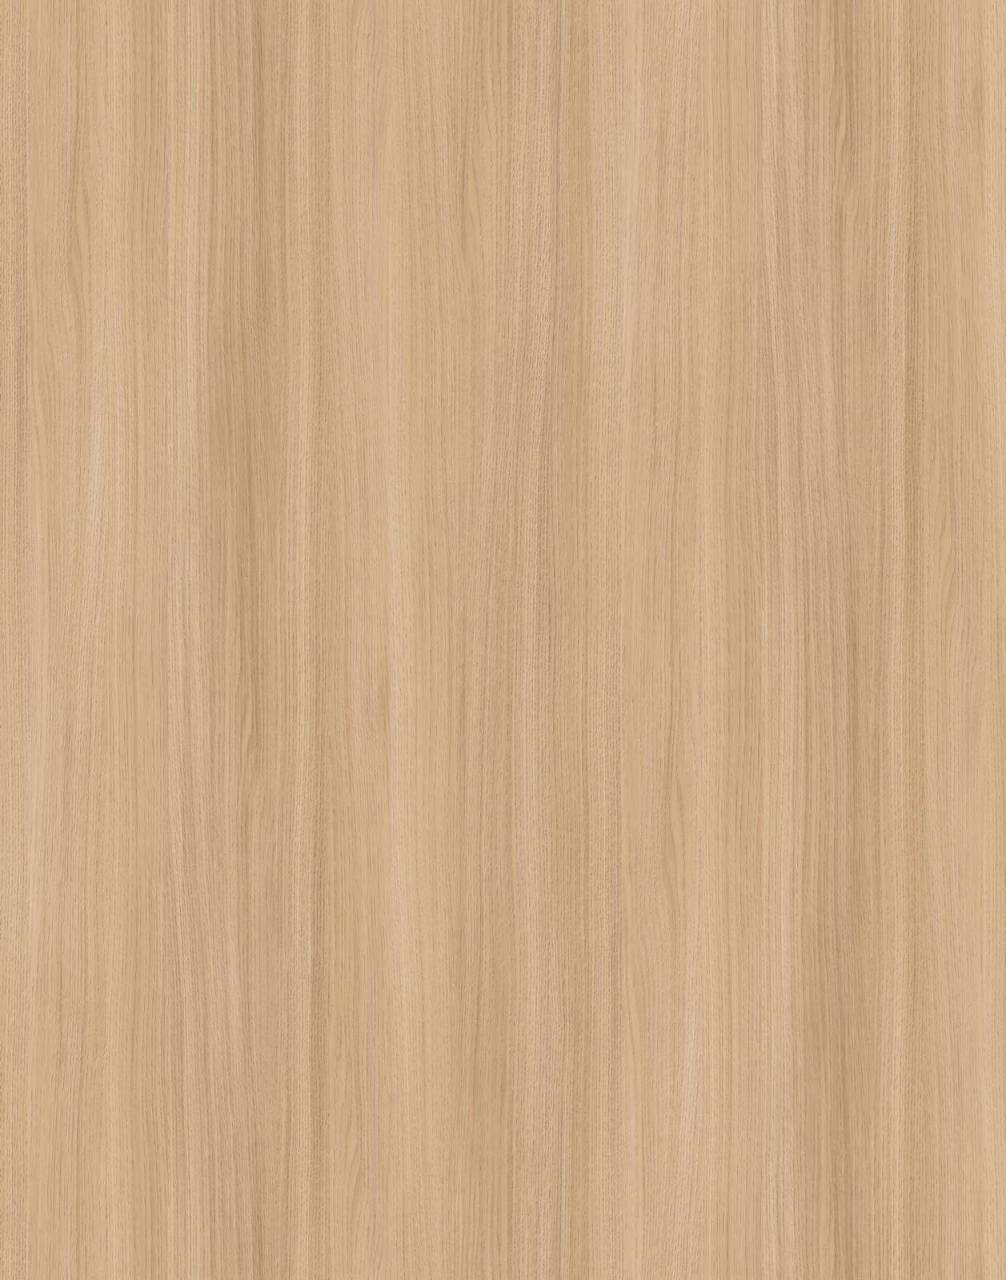 K543 Sand Barbera Oak (MF PB sample)